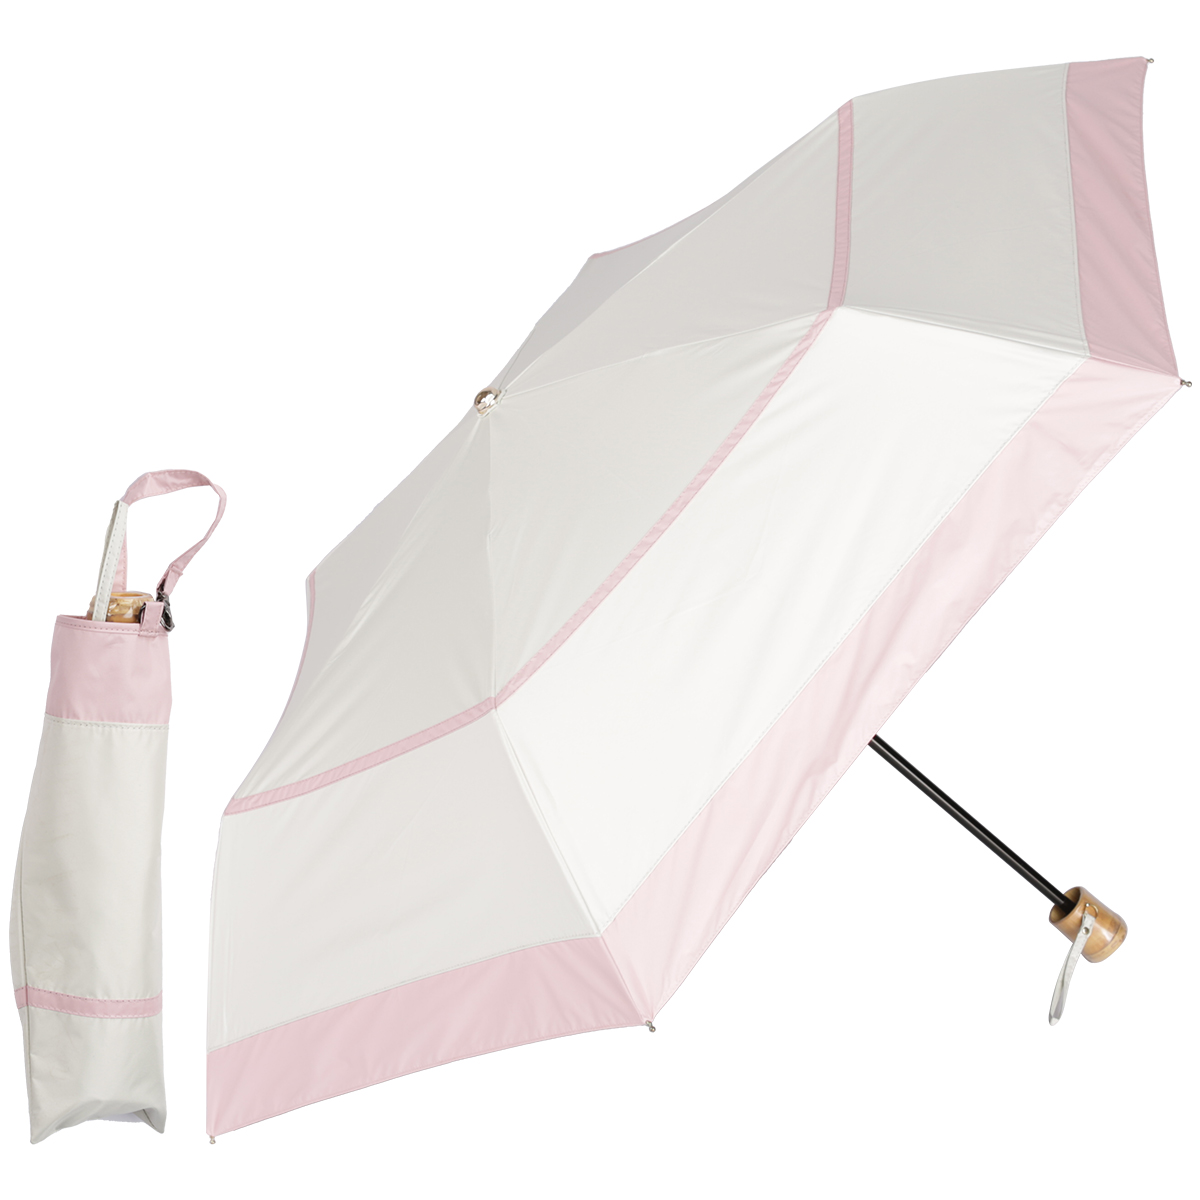 日傘 完全遮光 折りたたみ 超軽量 200g uvカット 折りたたみ日傘 晴雨兼用 折り畳み傘 レディース コンパクト 紫外線対策 遮熱 プレゼント